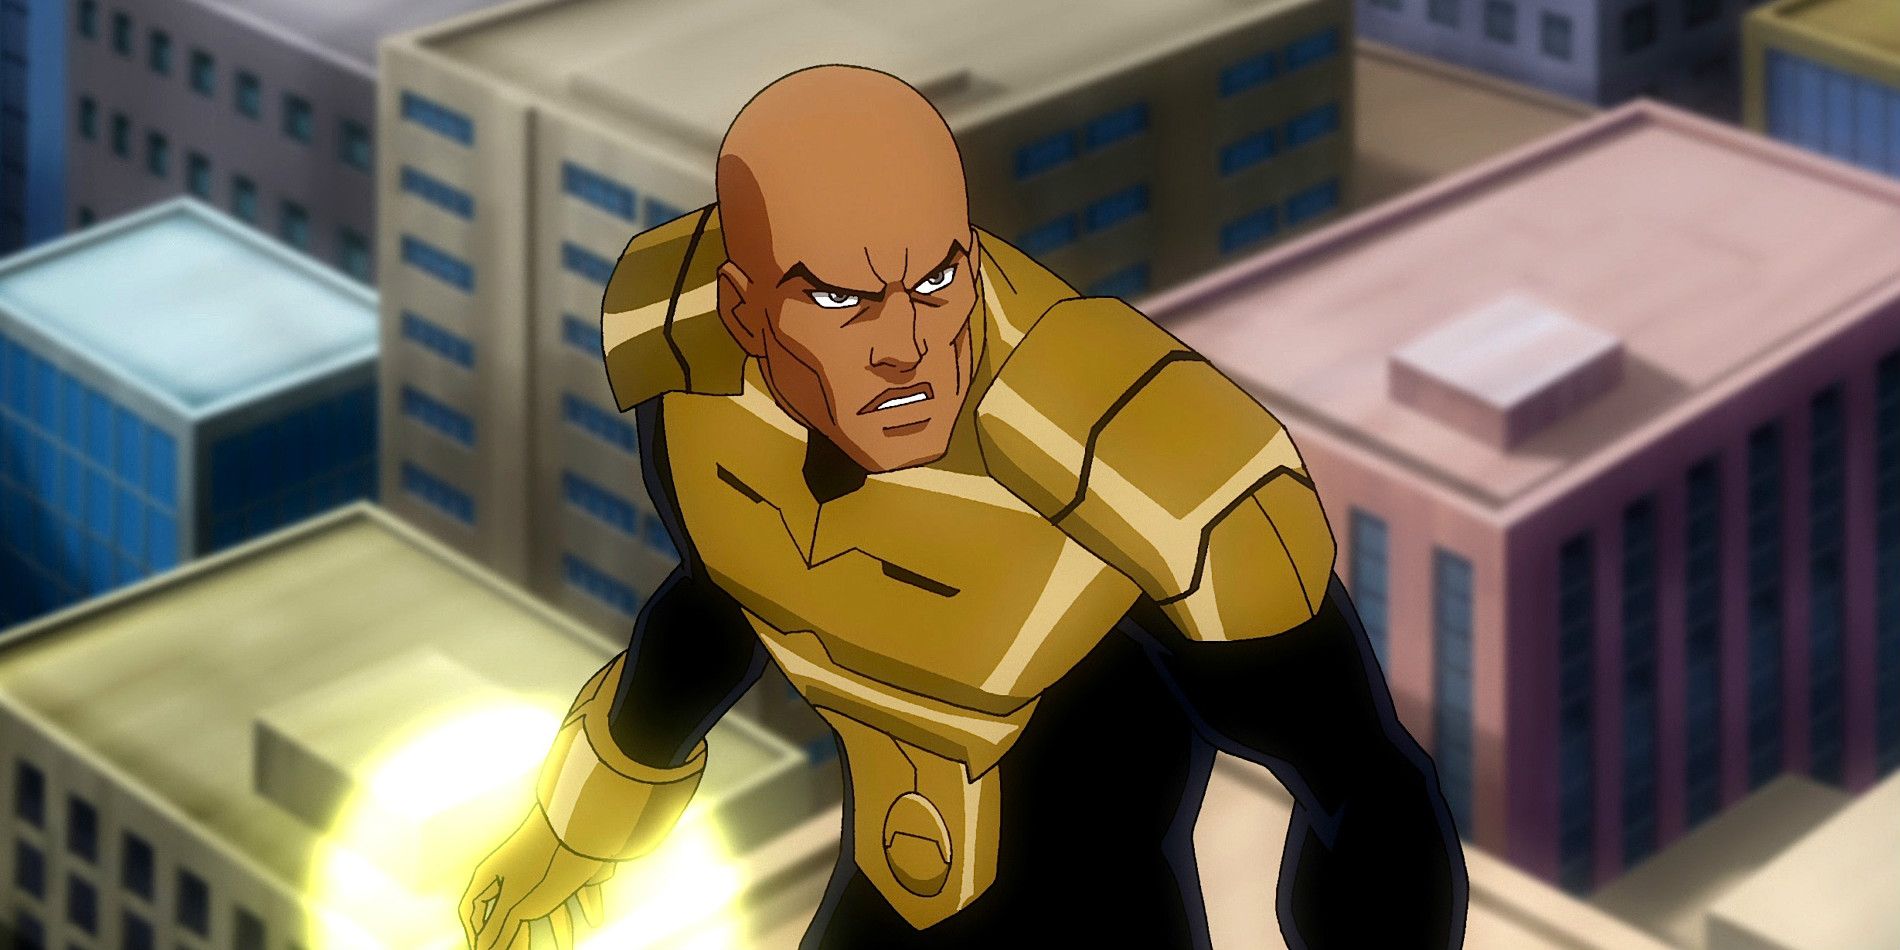 Chris North as Lex Luthor